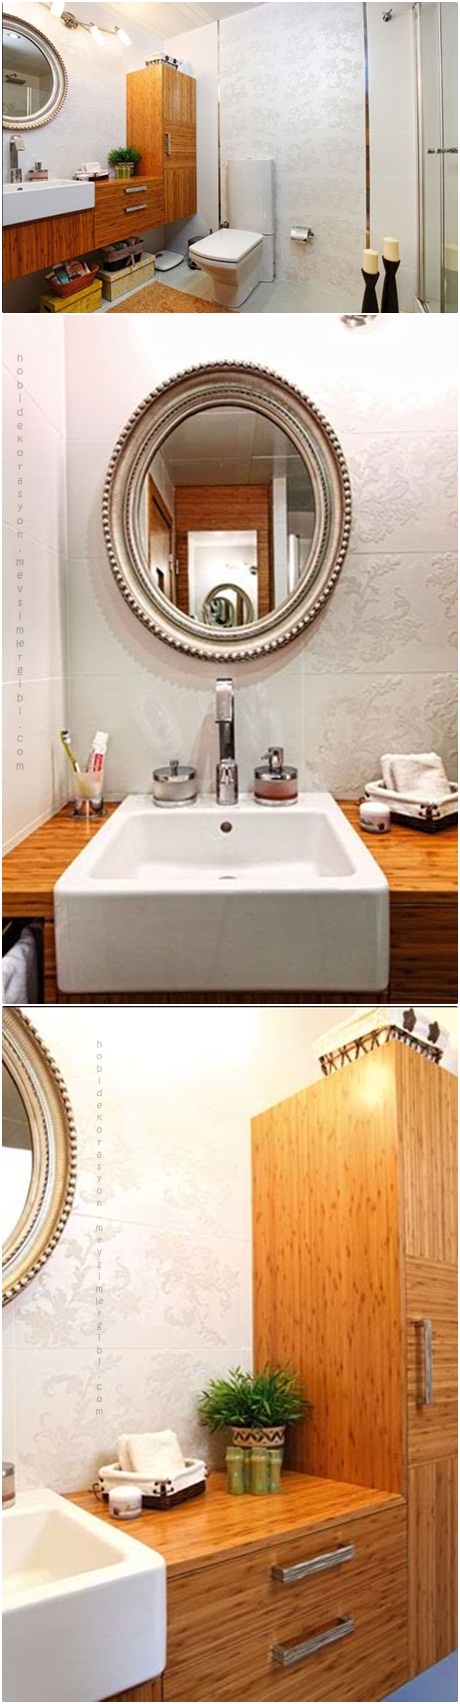 banyo dekorasyonu örnekleri banyo duş wc dekorları dekorasyonları